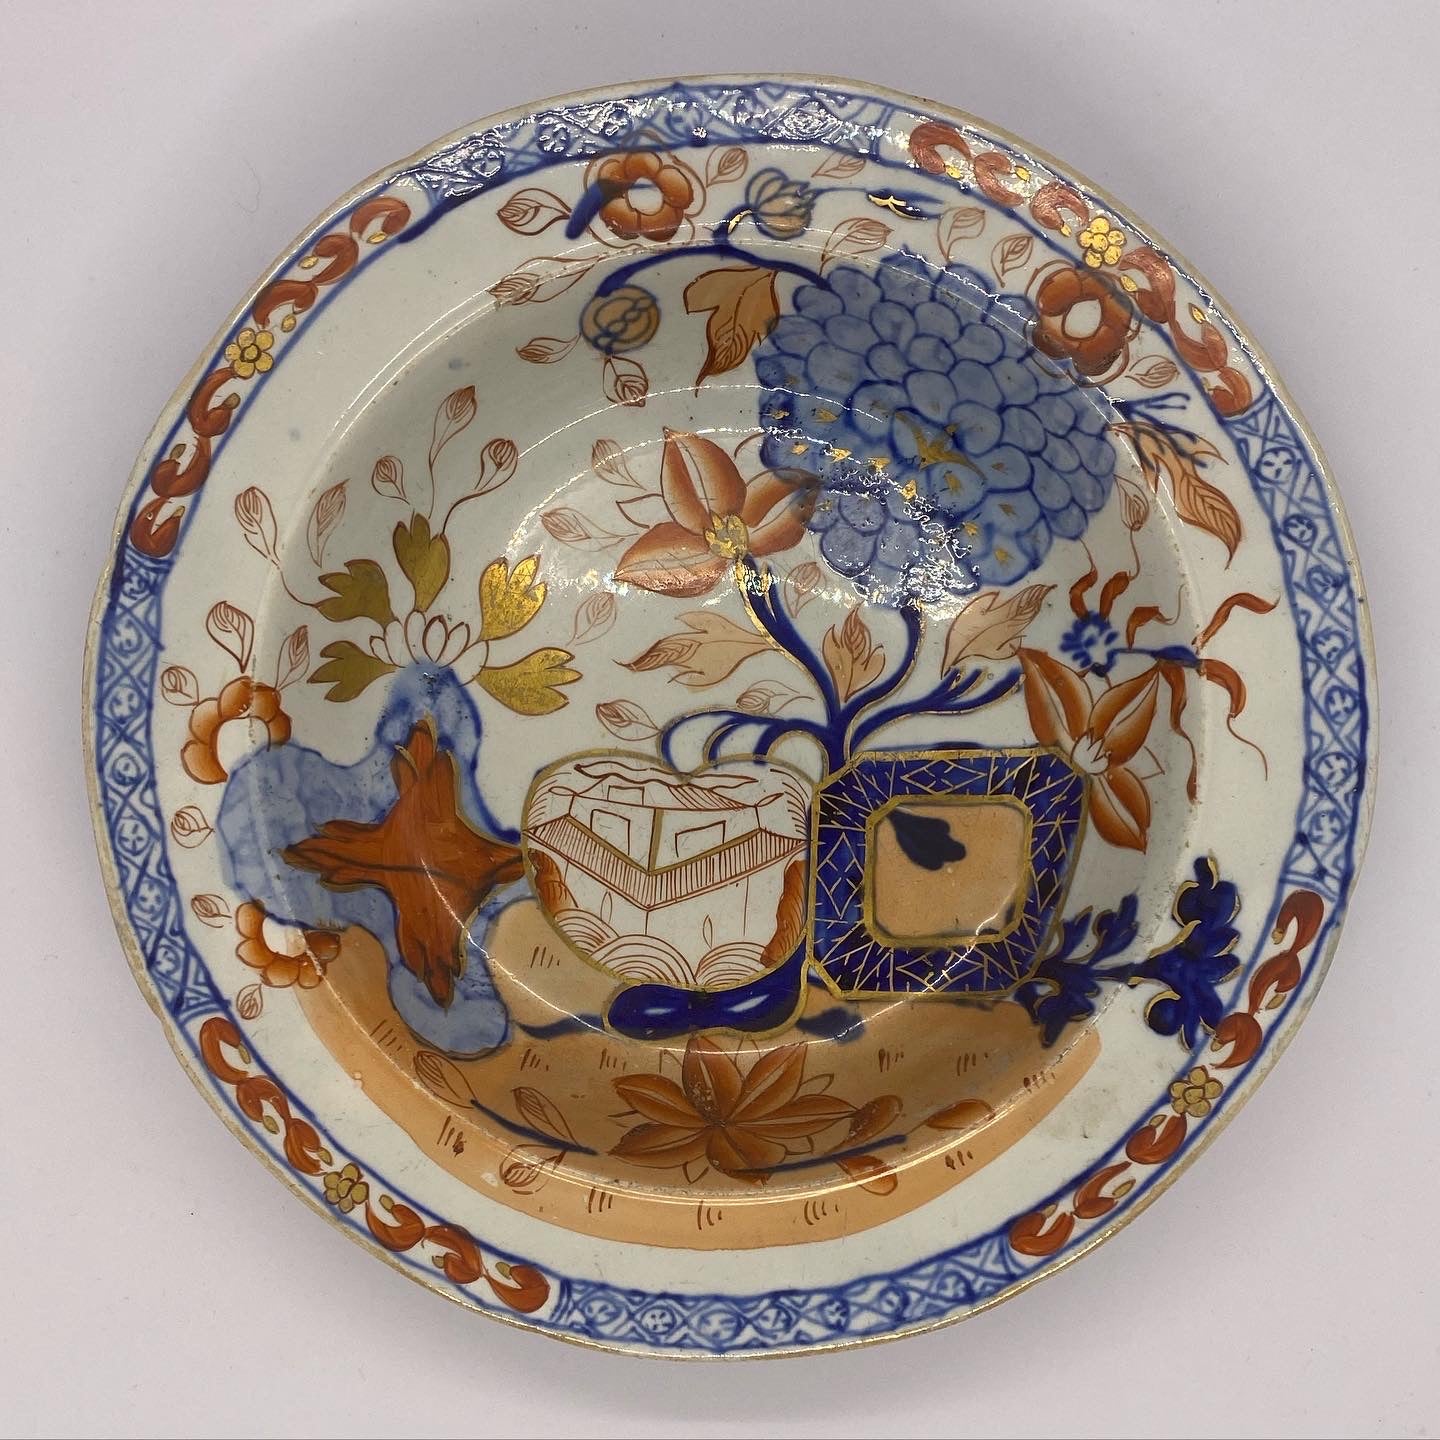 罕见的早期维多利亚梅森铁石彩绘碗，约 1825 年